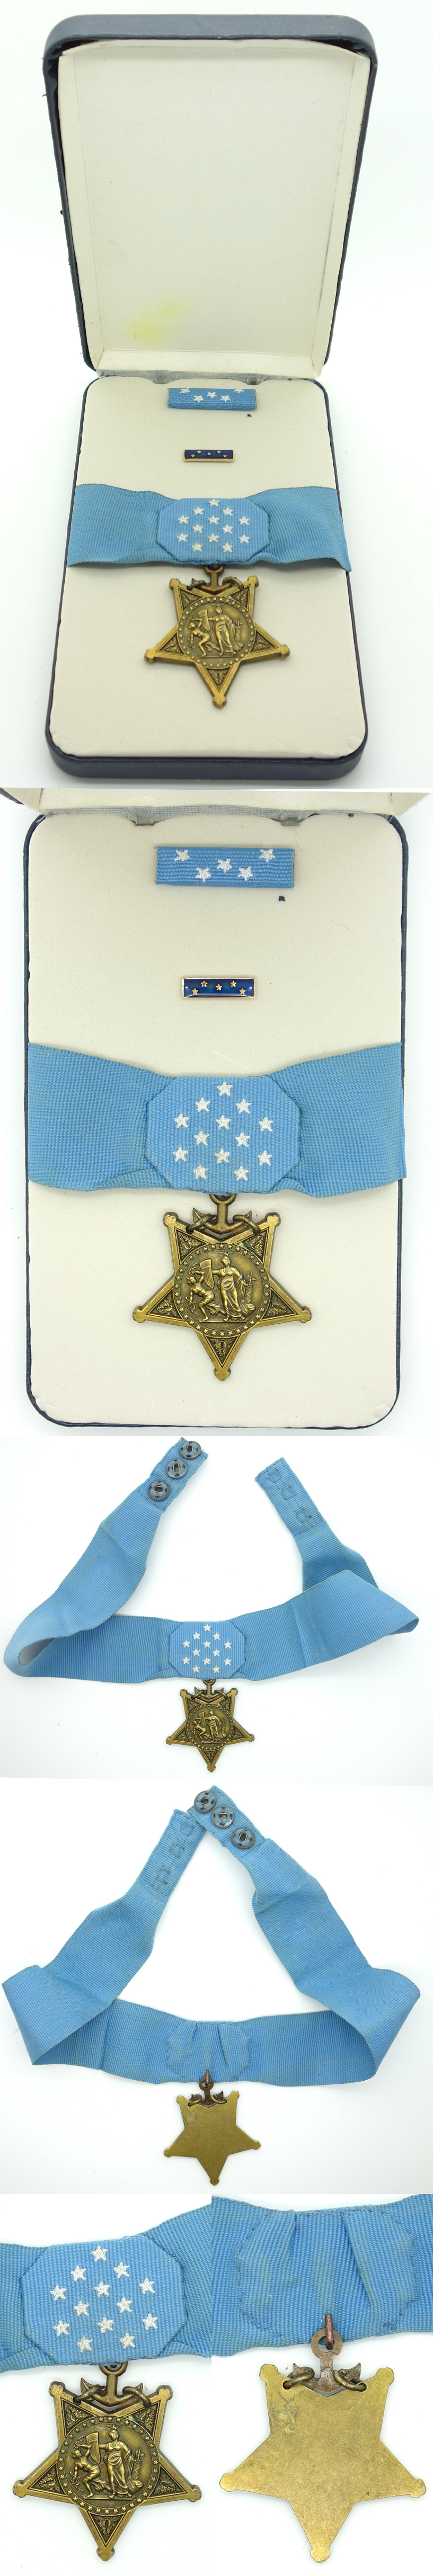 American Navy Medal of Honor